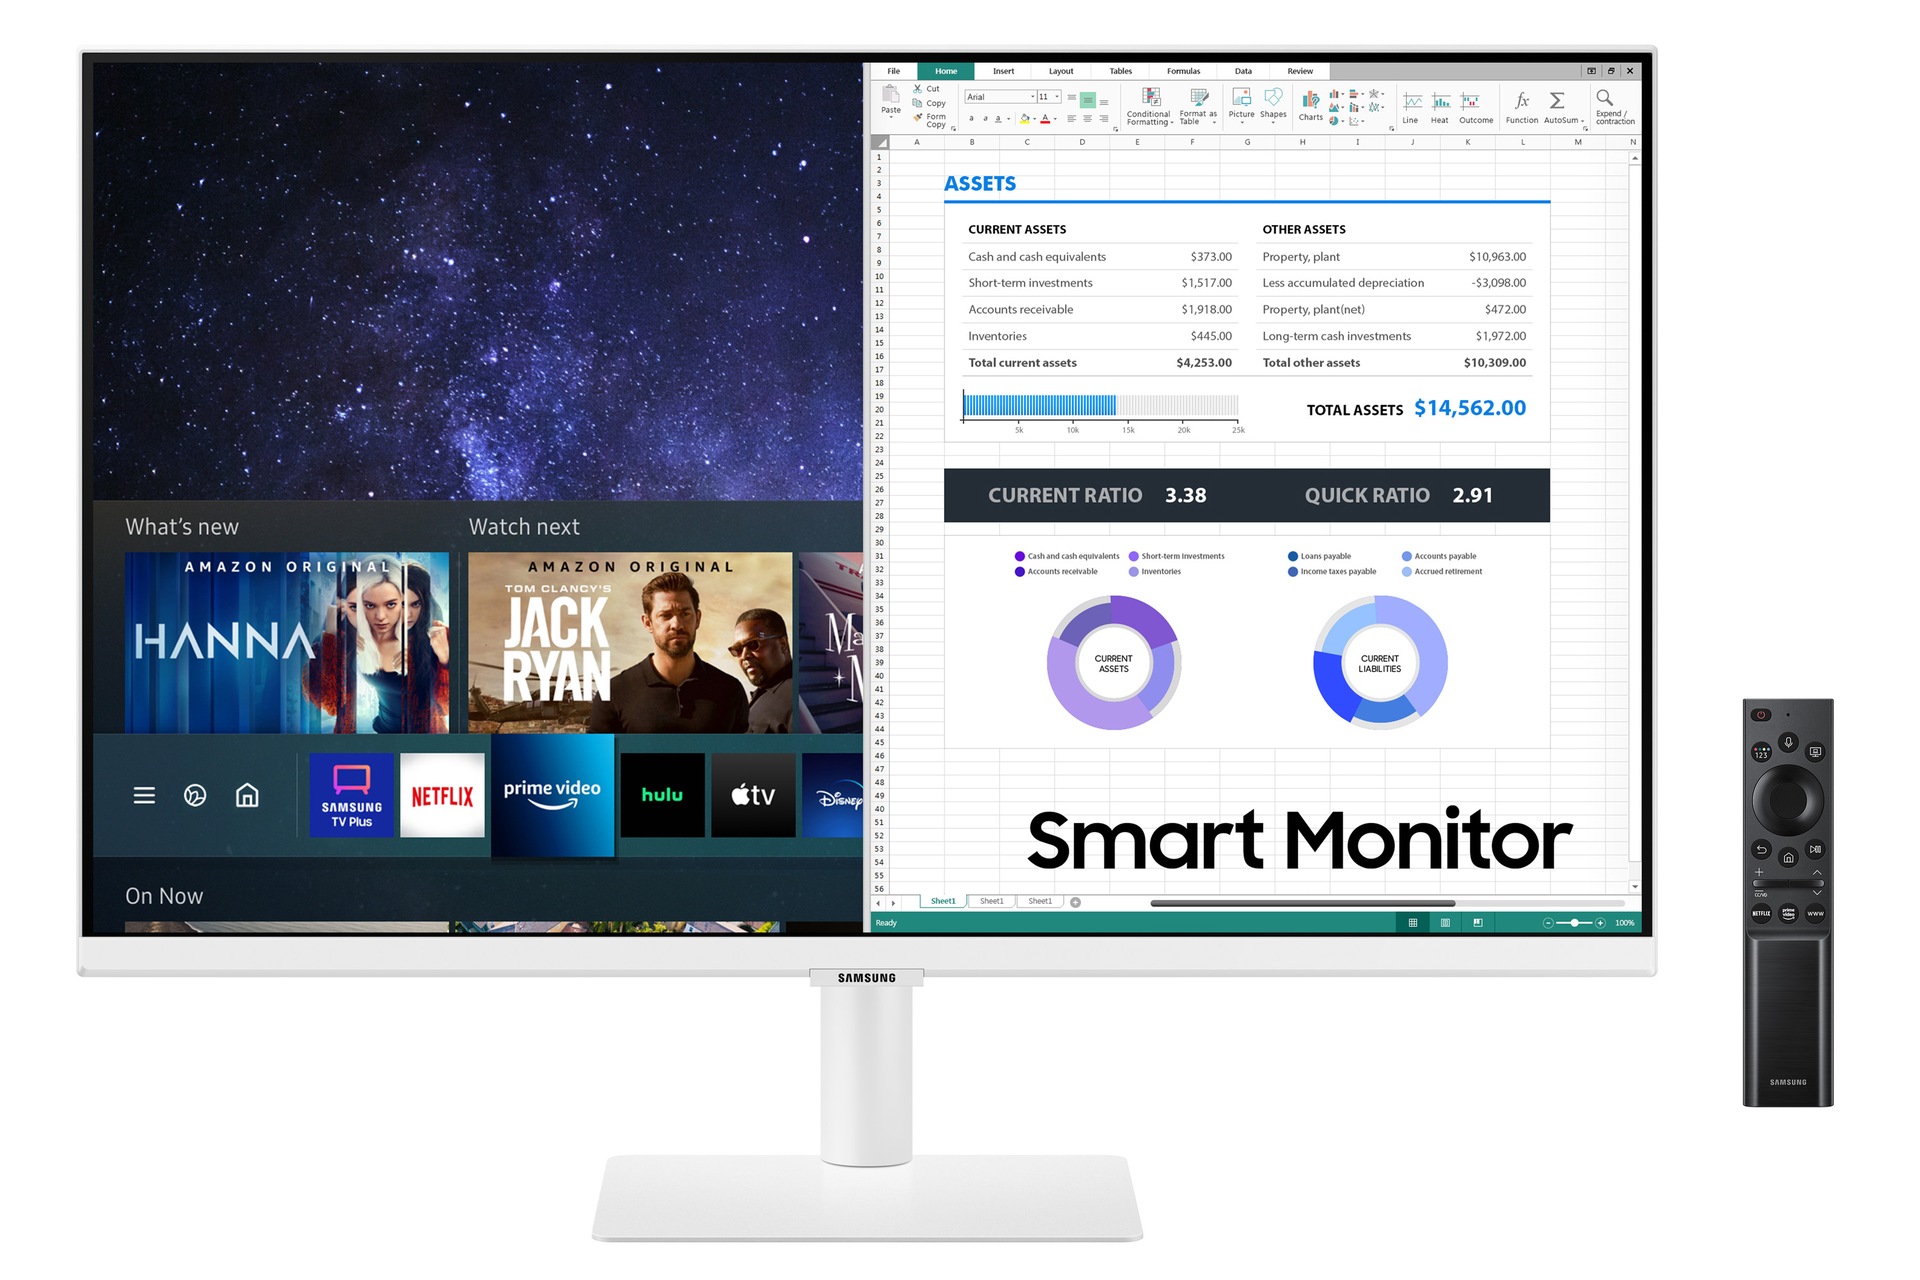 De nouvelles tailles pour les Smart Monitor M8, M7 et M5 de Samsung